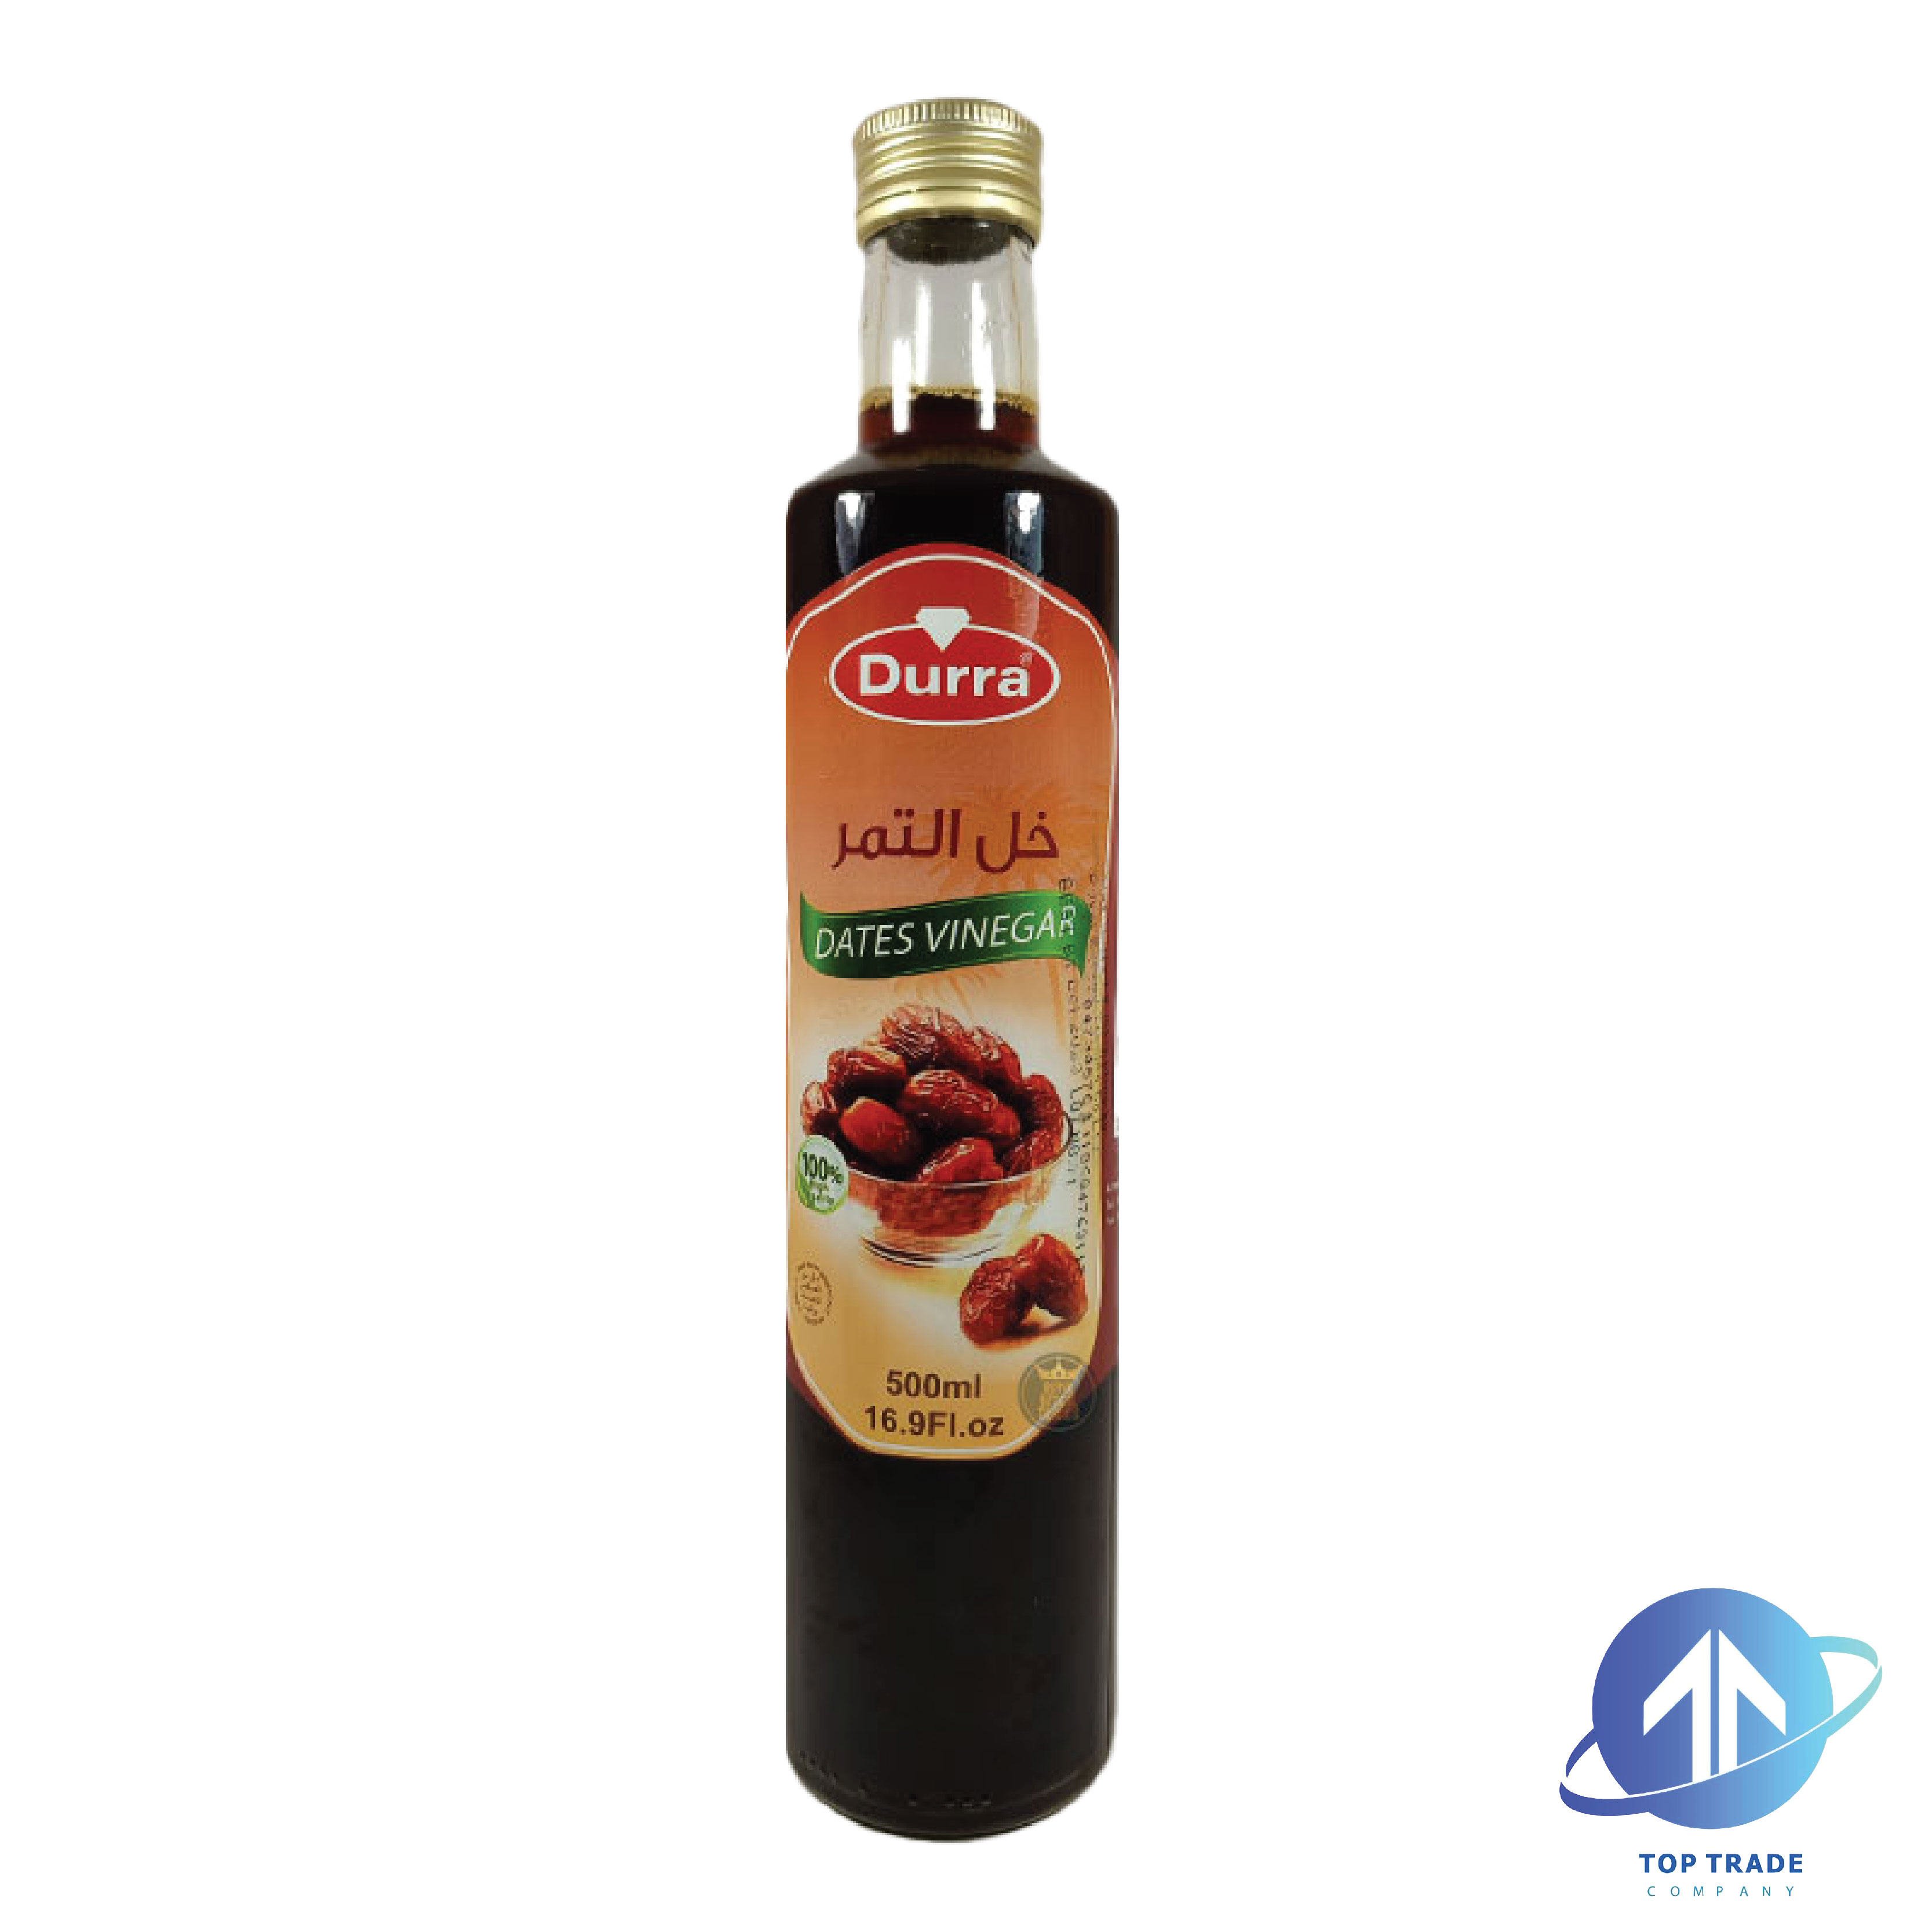 Durra Dates Vinegar 500ML